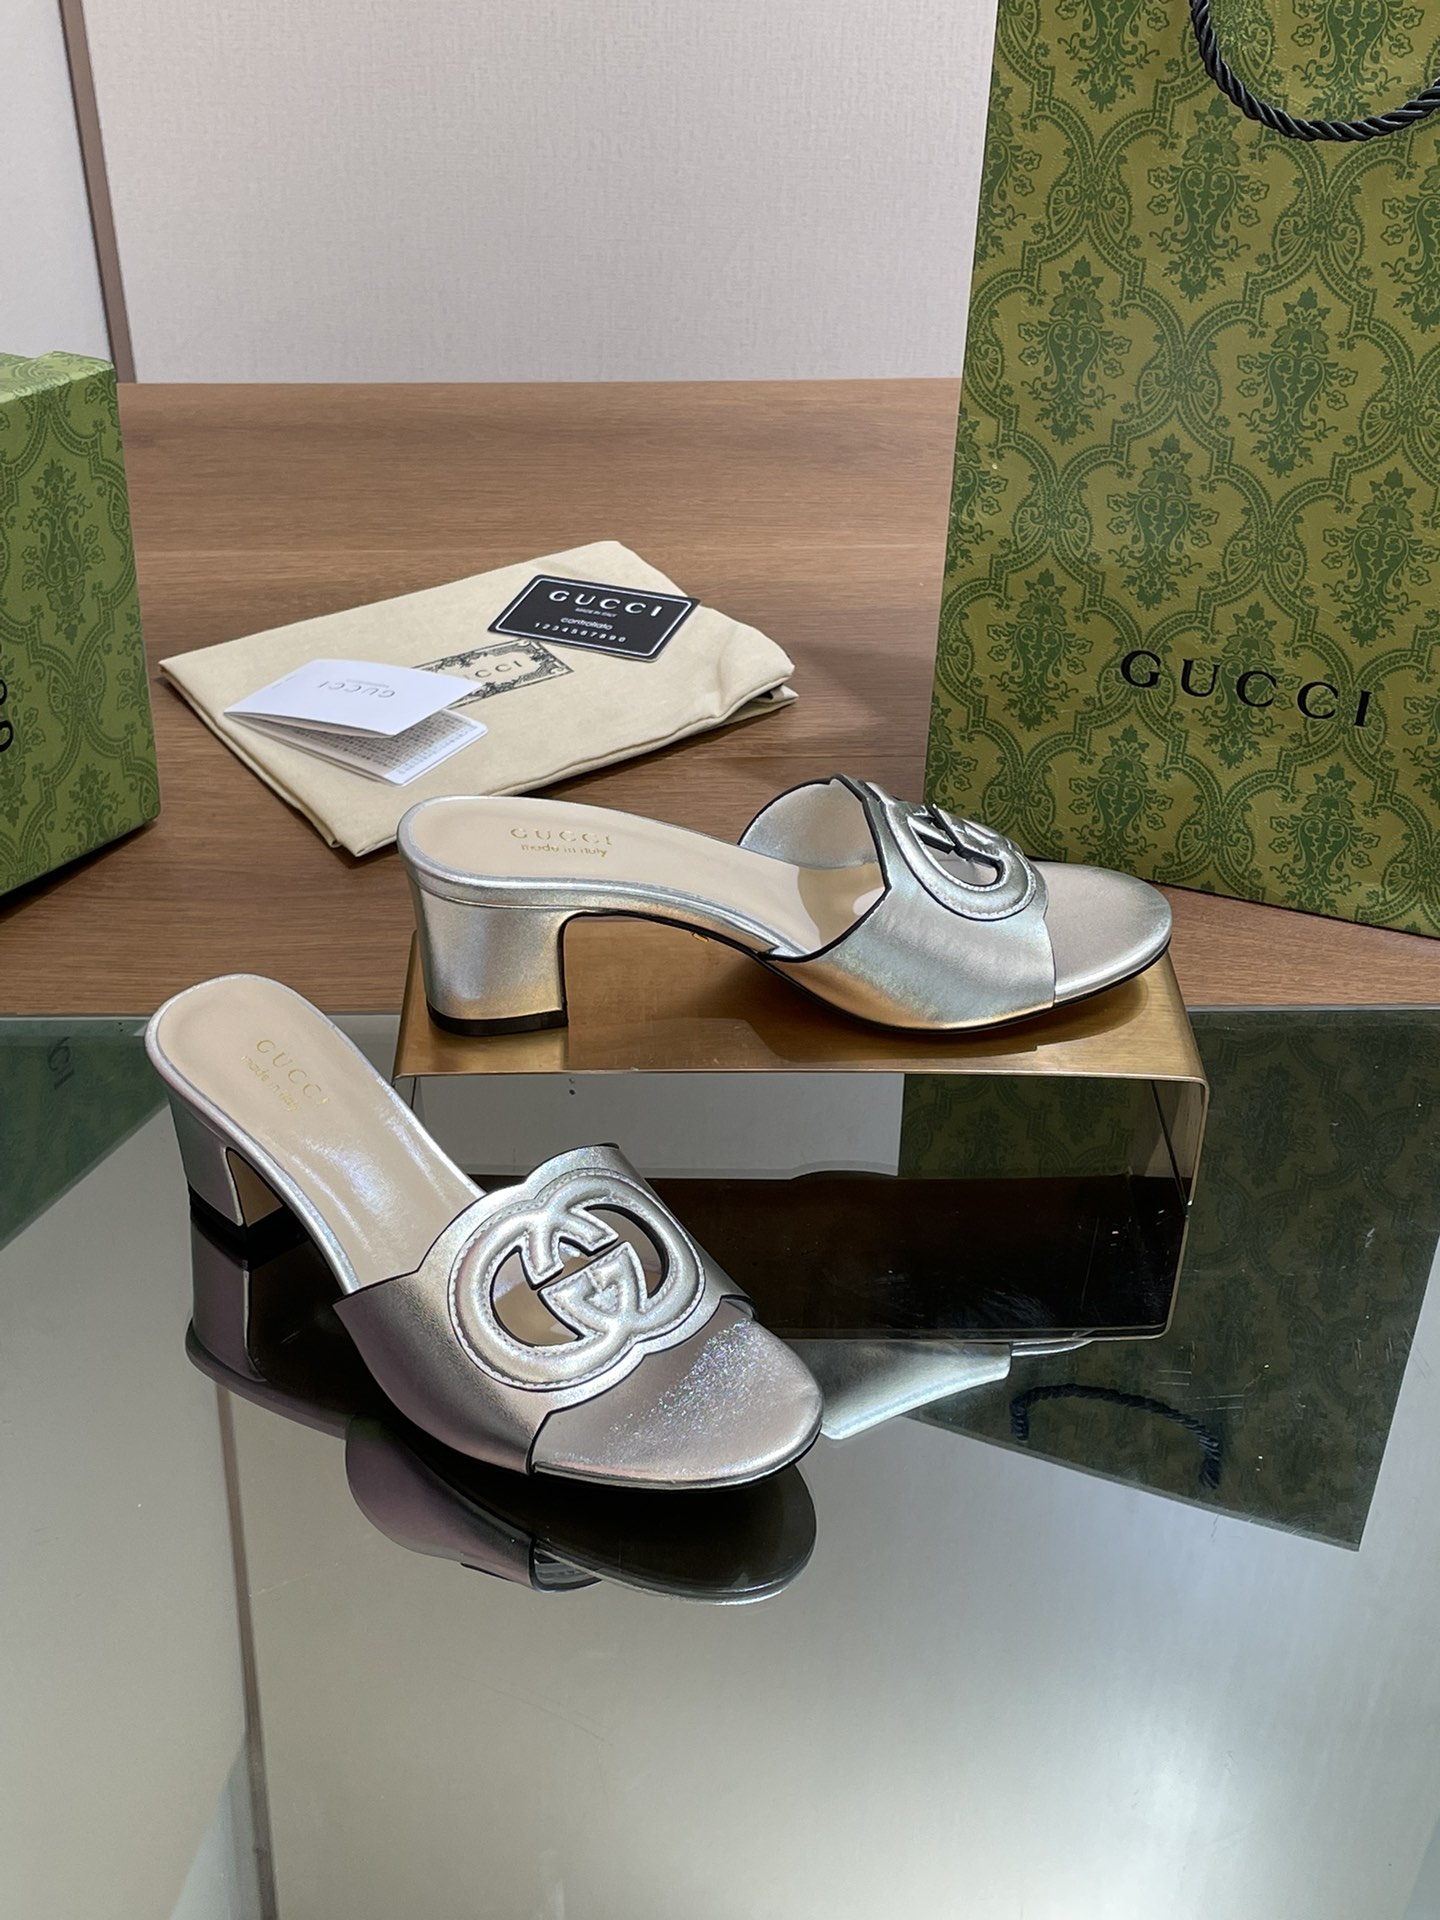 Gucci Chaussures Pantoufles Travail ouvert Genuine Leather Peau de mouton Série d’été